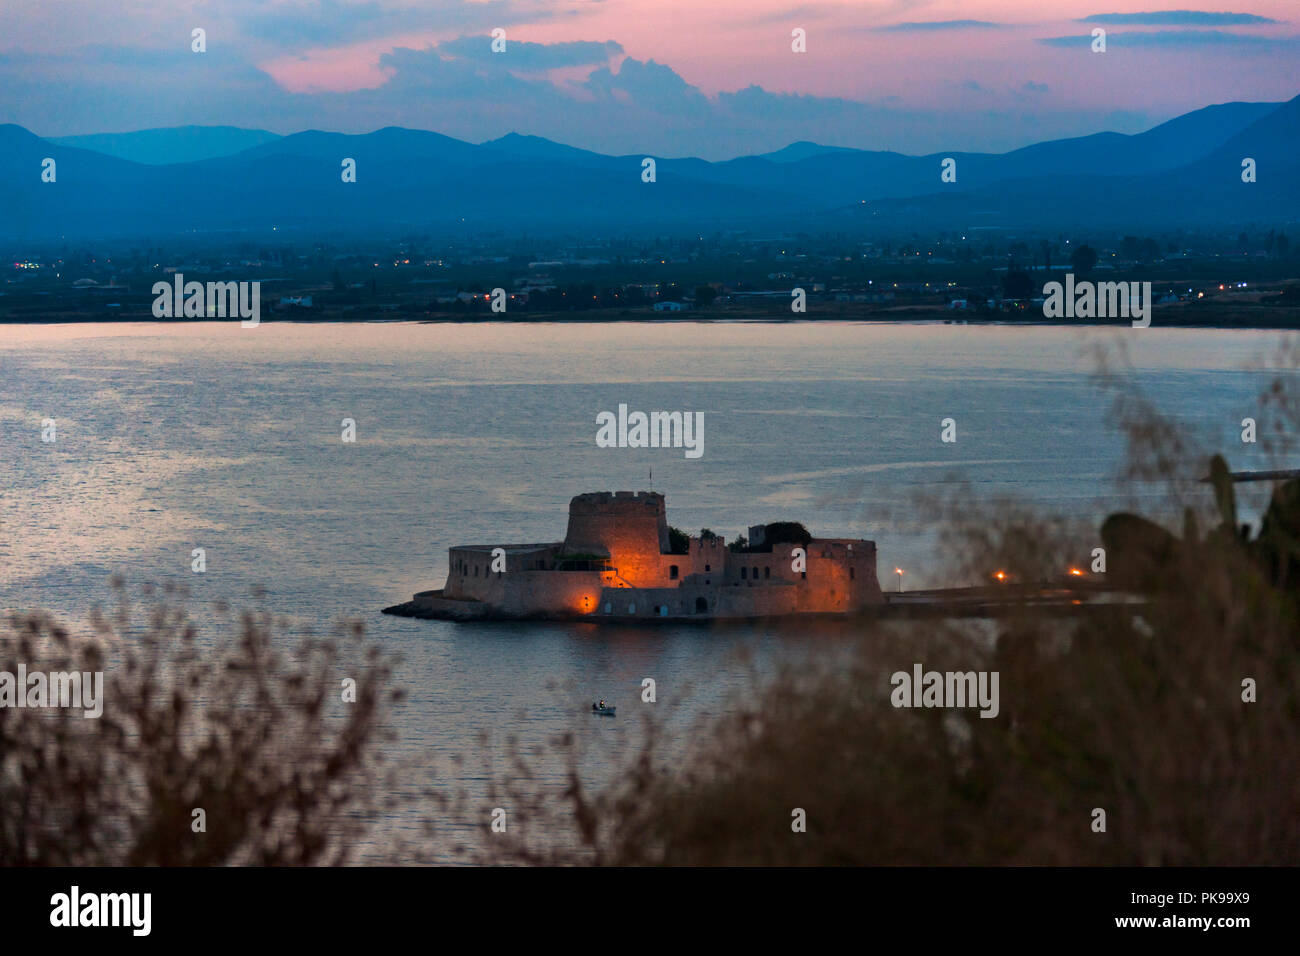 Night view of Bourtzi Castle in the Aegean Sea, Nafplio, Greece Stock Photo